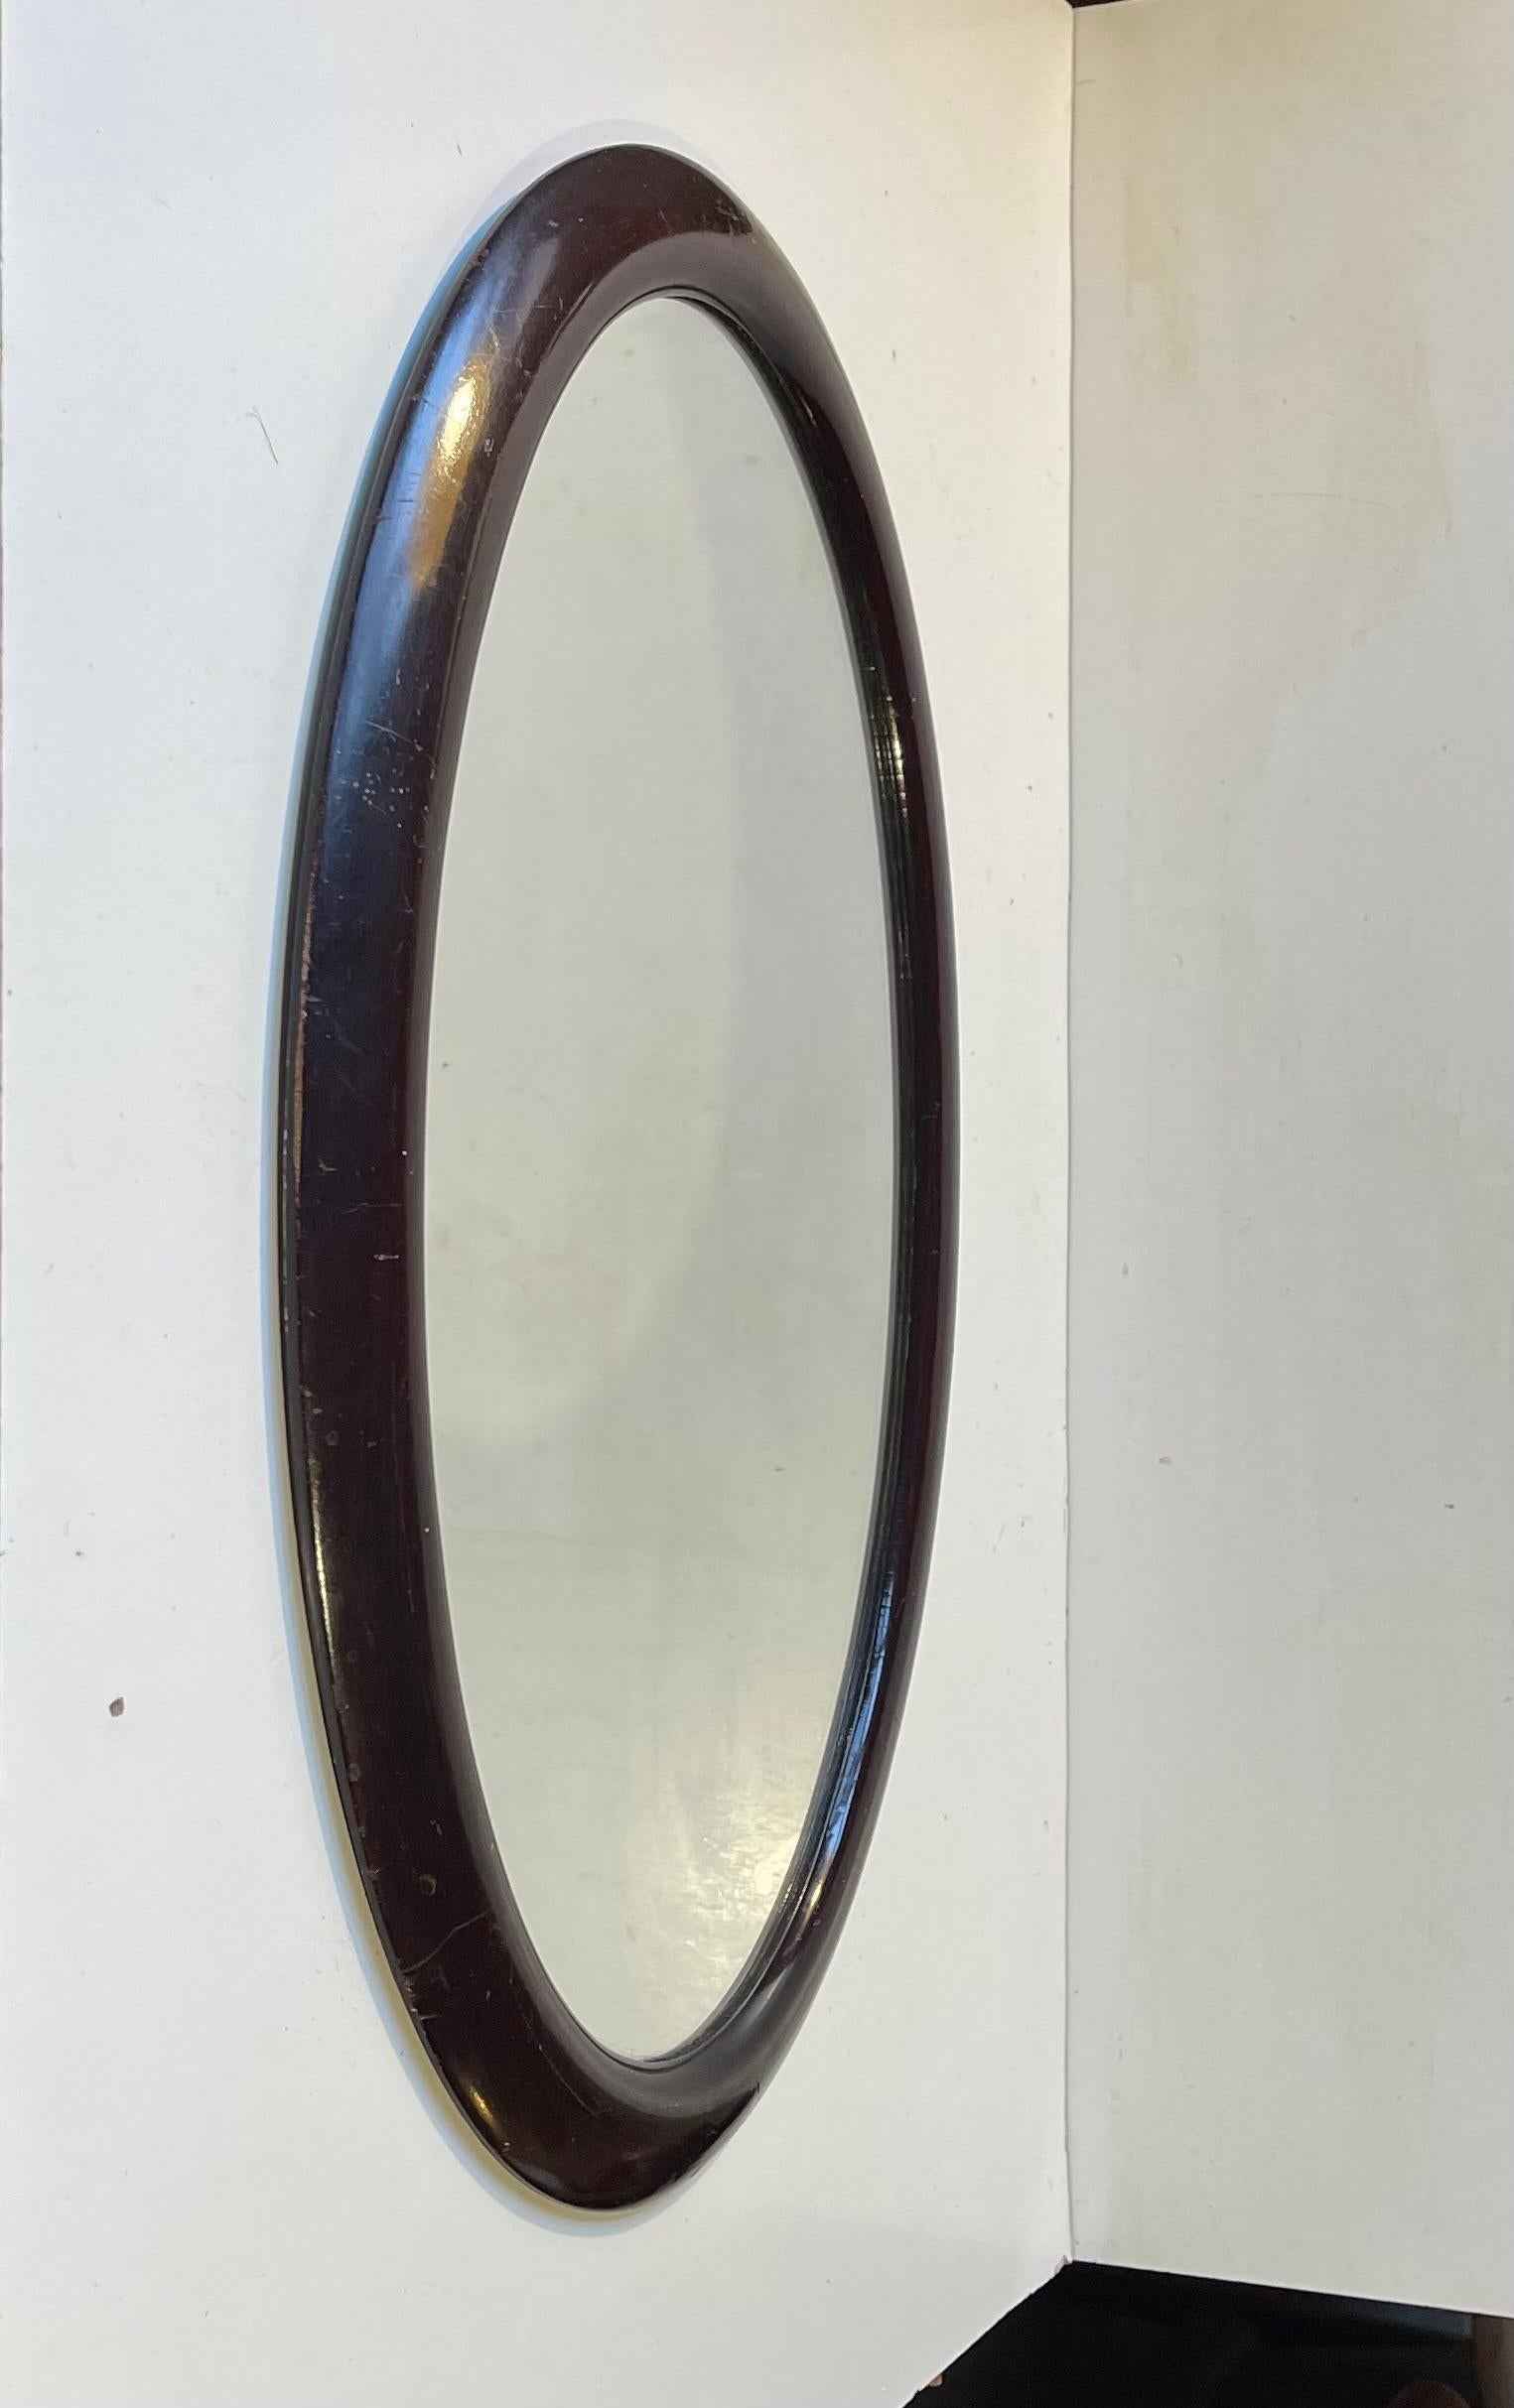 Miroir mural en bois courbé teinté chêne (ton acajou foncé). Des courbes nettes et des lignes simples dans une forme ovale. Fabriqué par un ébéniste danois au début des années 1920. Dimensions : 49x33x3 cm dans le cadre.